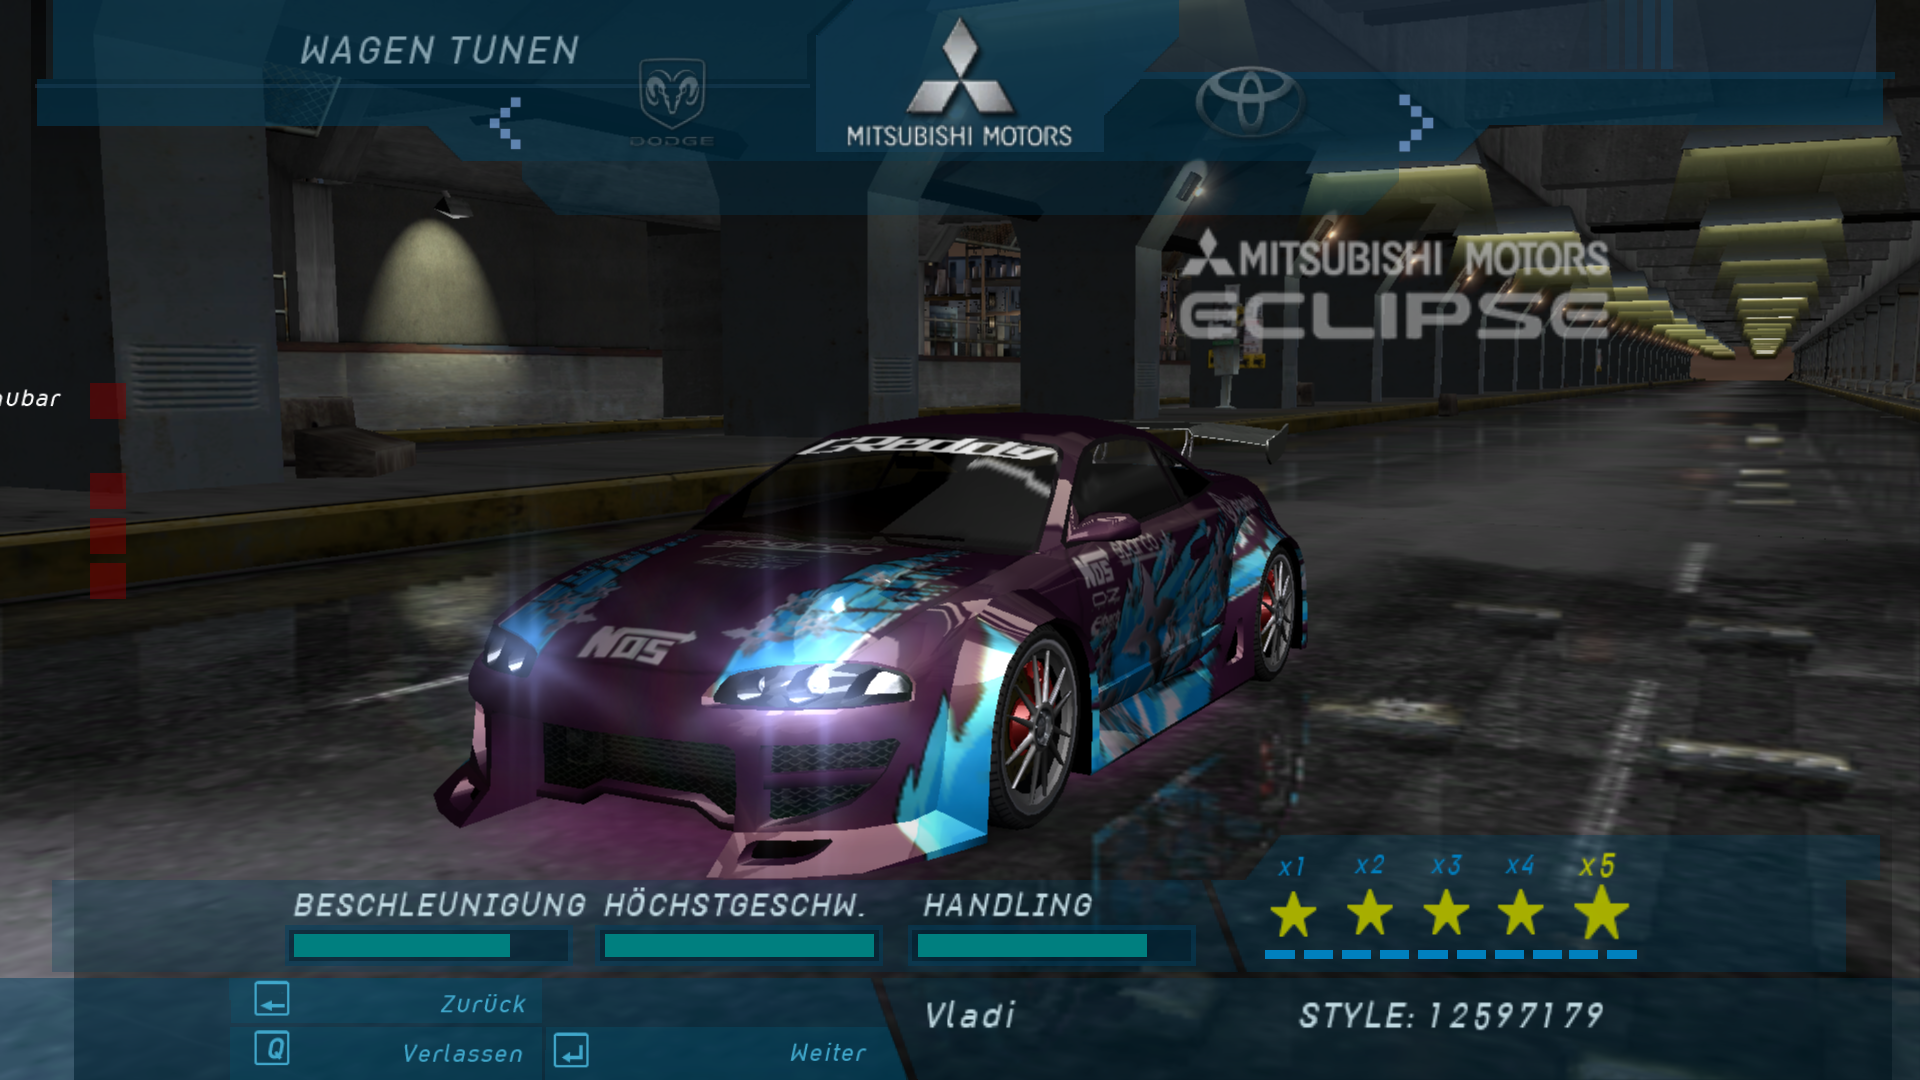 Need For Speed Underground Mitsubishi Melissa's Eclipse GSX